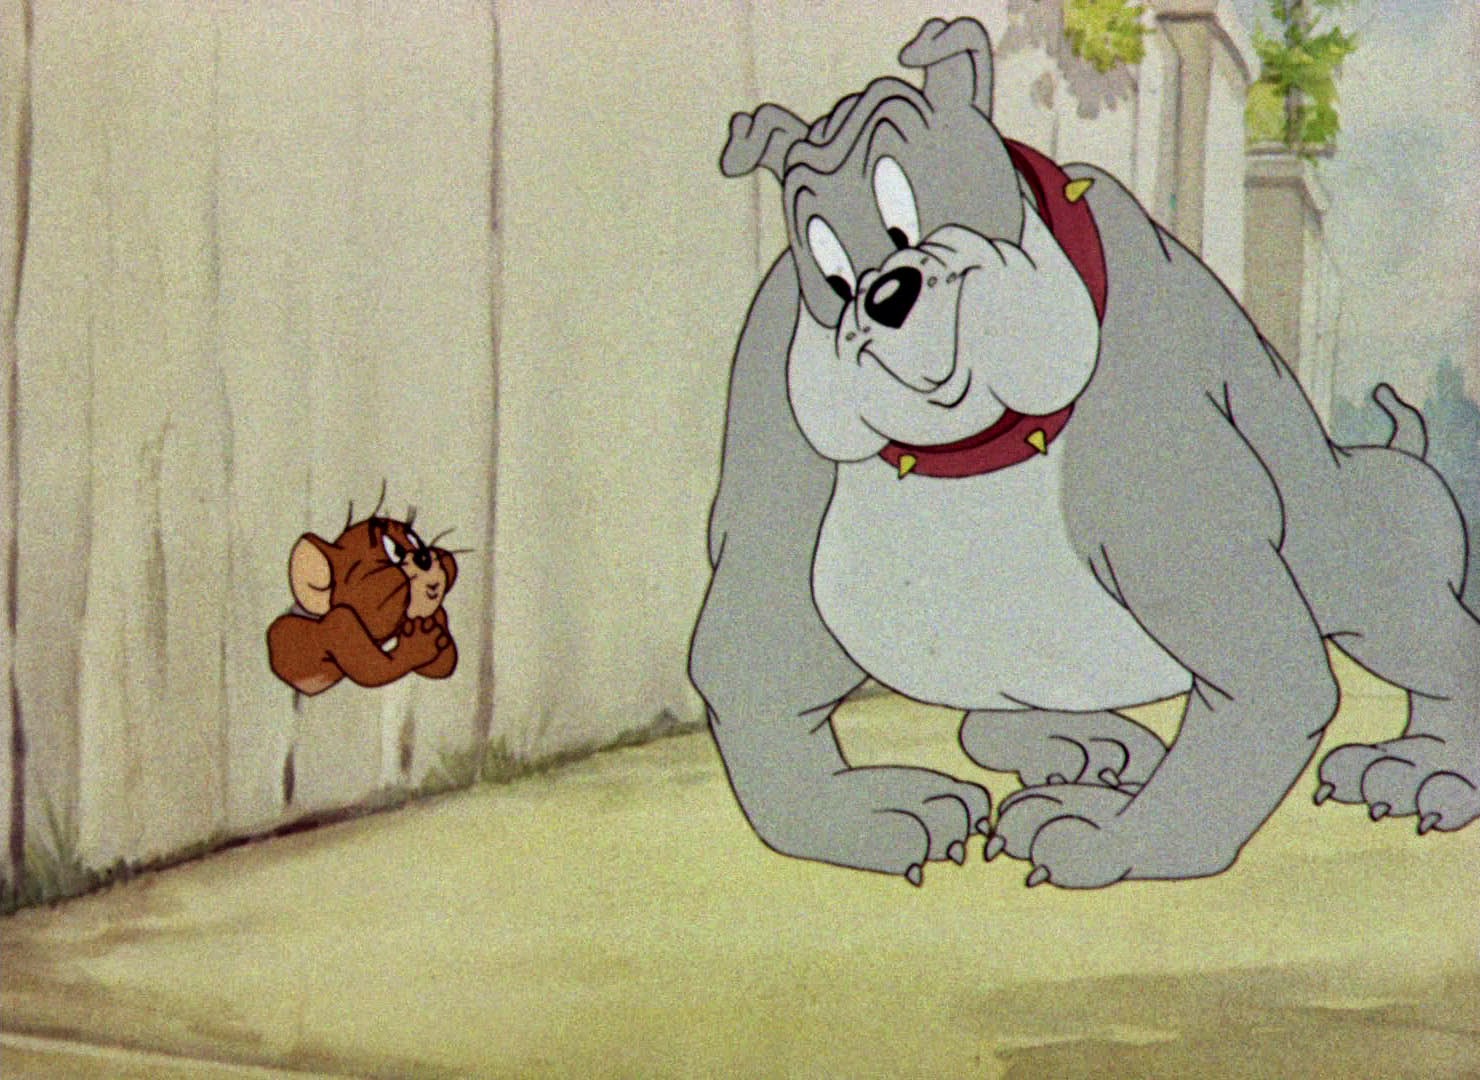 Tom & Jerry - Episodio 15 (El guardaespaldas) - Audio Latino (1944) - El Perro De Tom Y Jerry